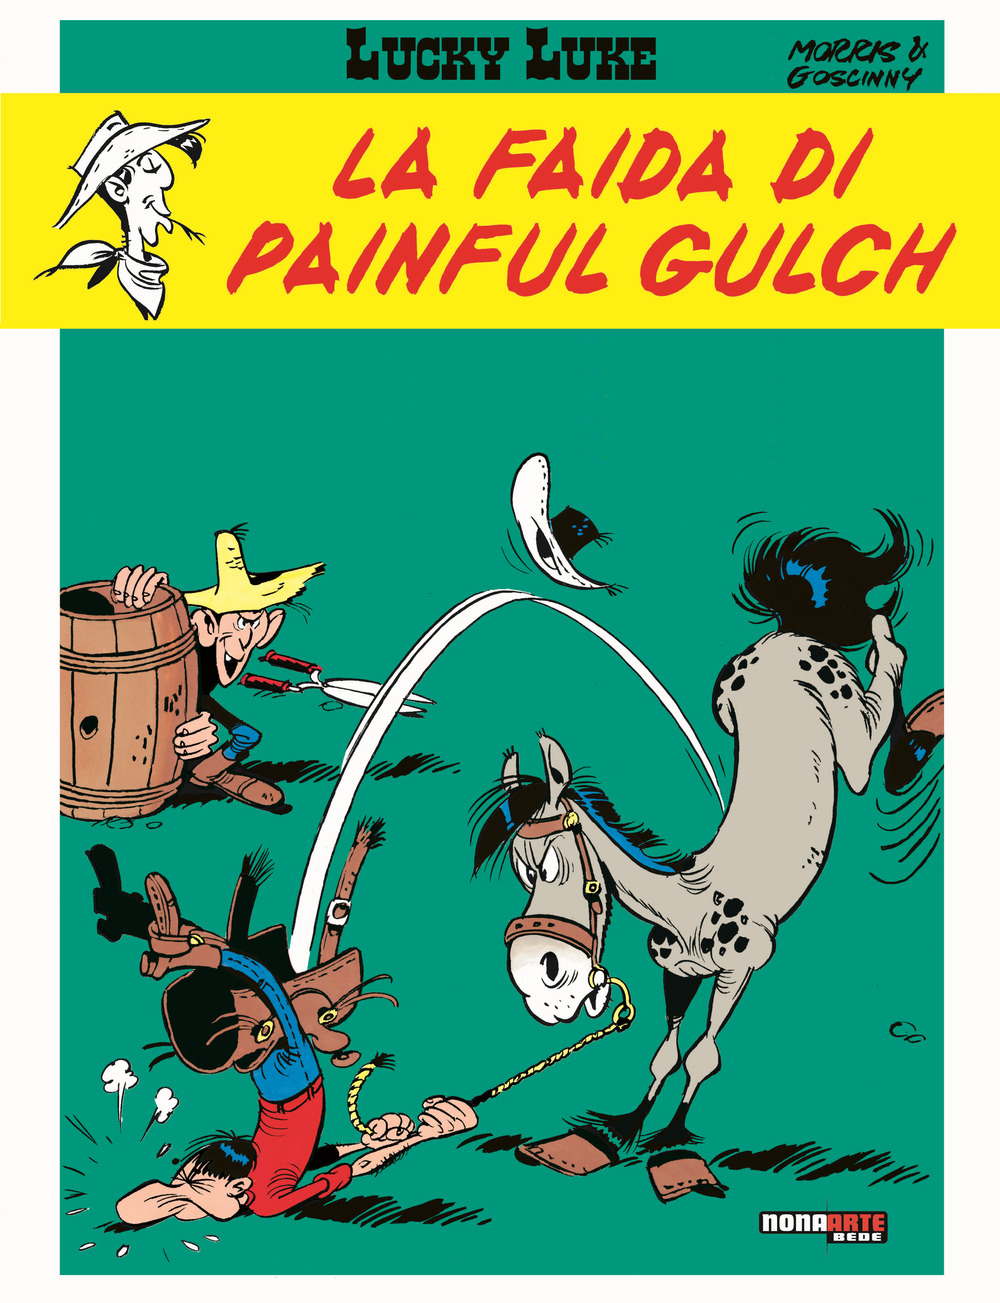 La faida di Painful Gulch. Lucky Luke